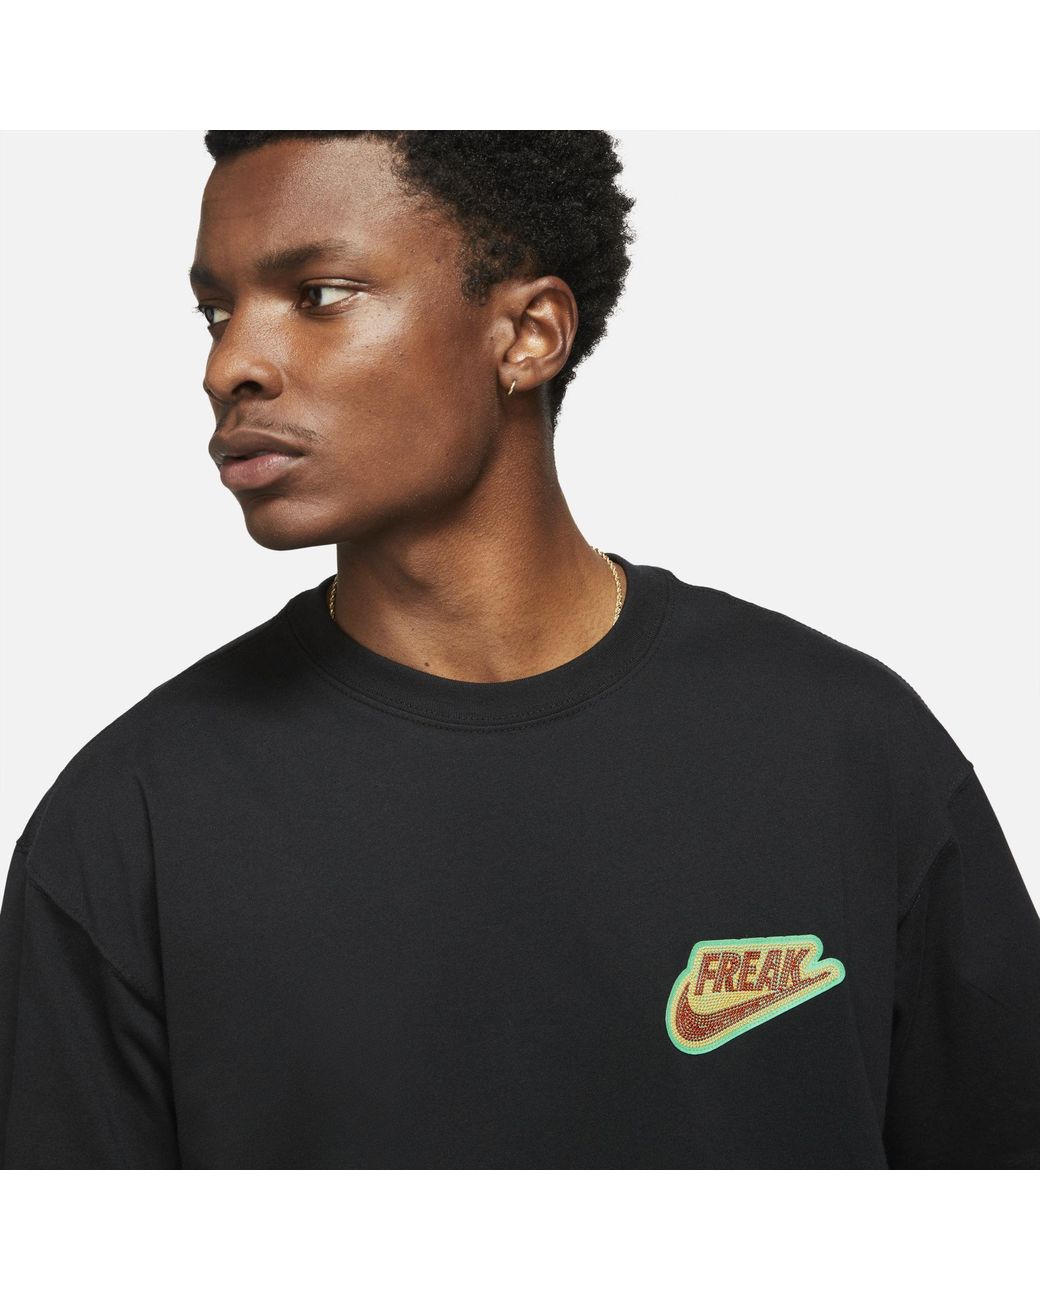 Nike Cotton Giannis "freak" Premium Basketball T-shirt in Black for Men |  Lyst Australia